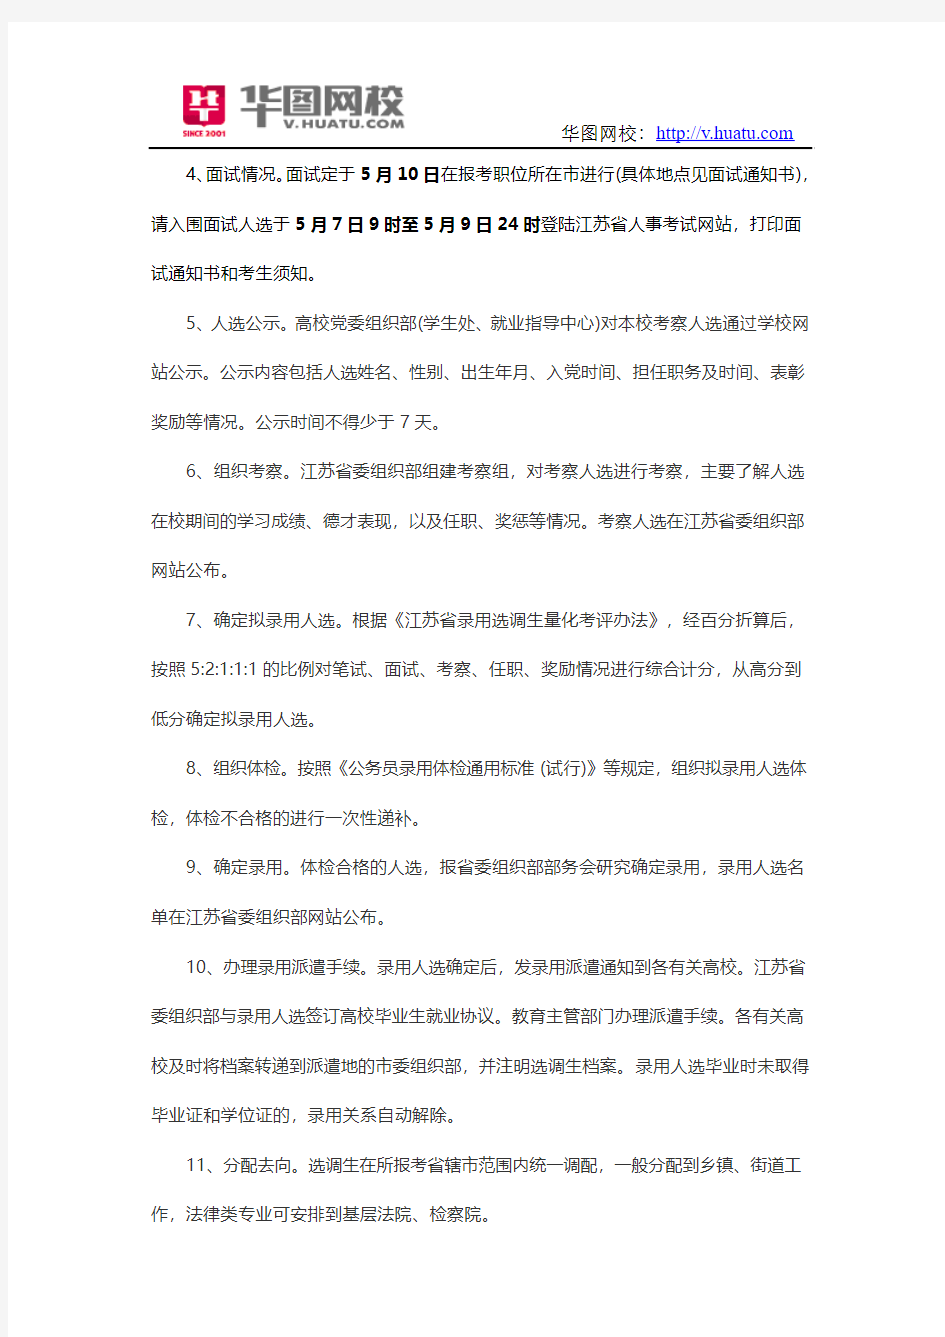 2015年江苏省选调生招聘考试笔试时间